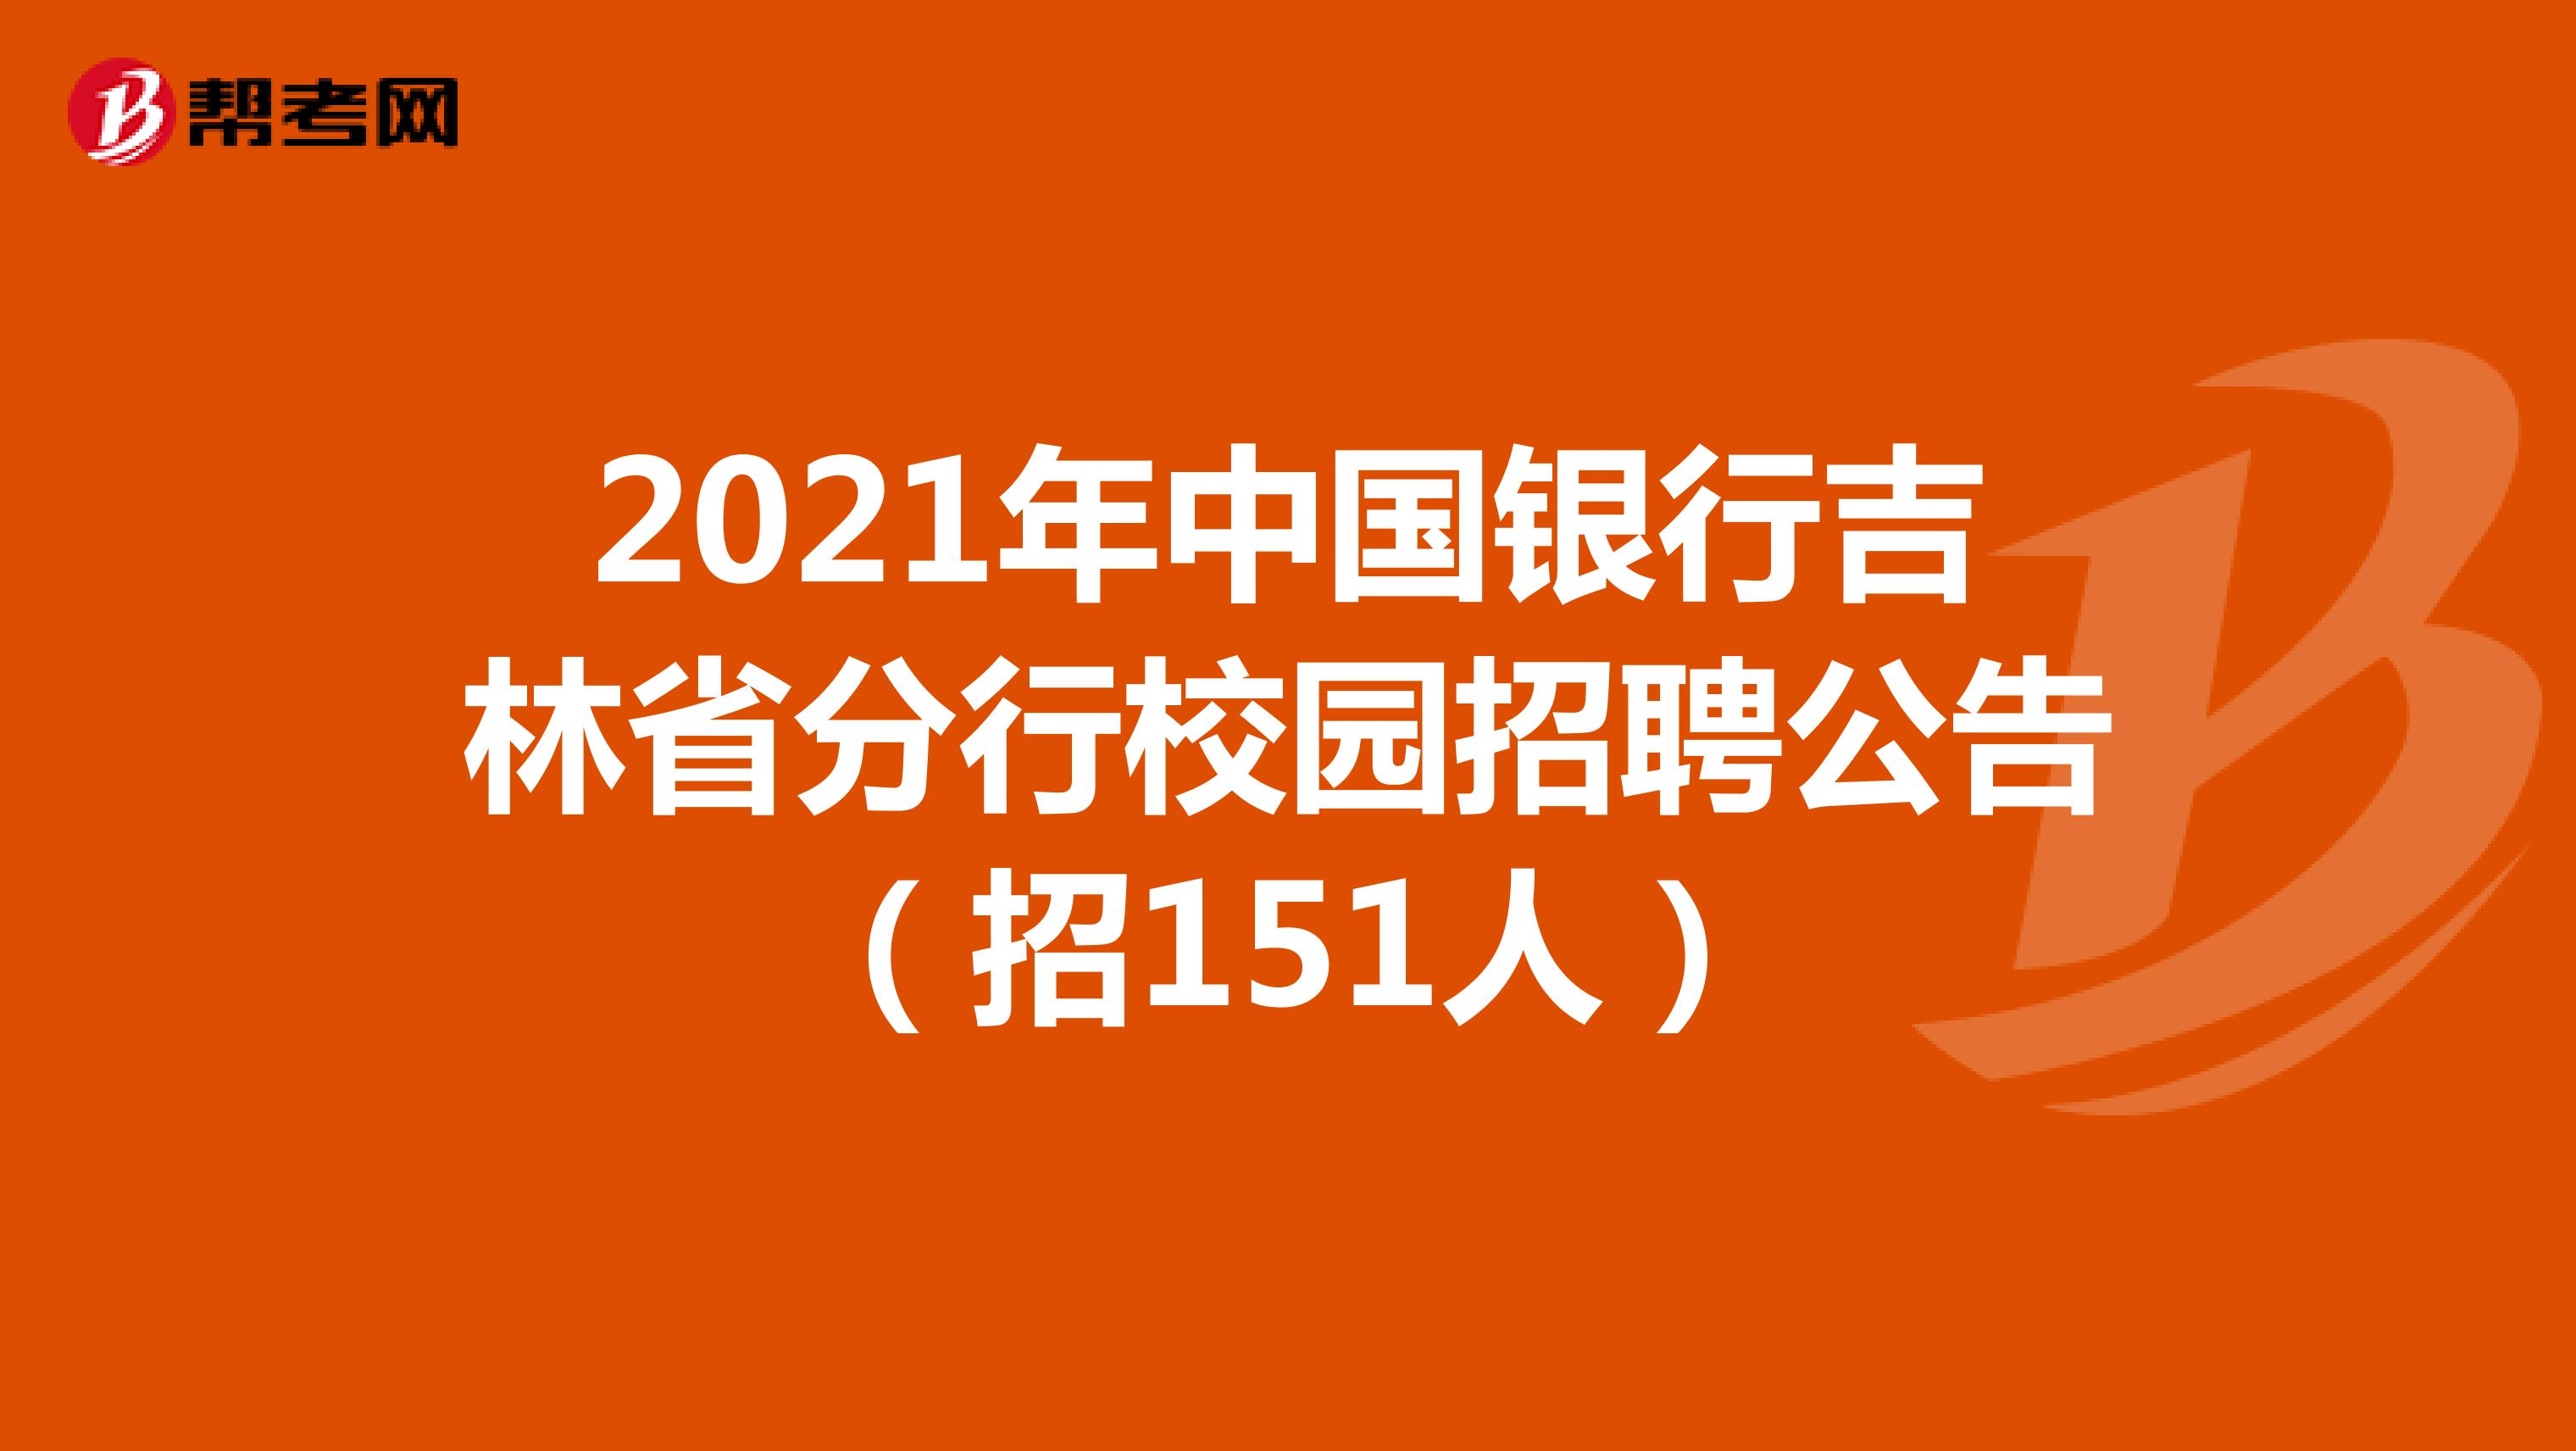 2021年中国银行吉林省分行校园招聘公告（招151人）